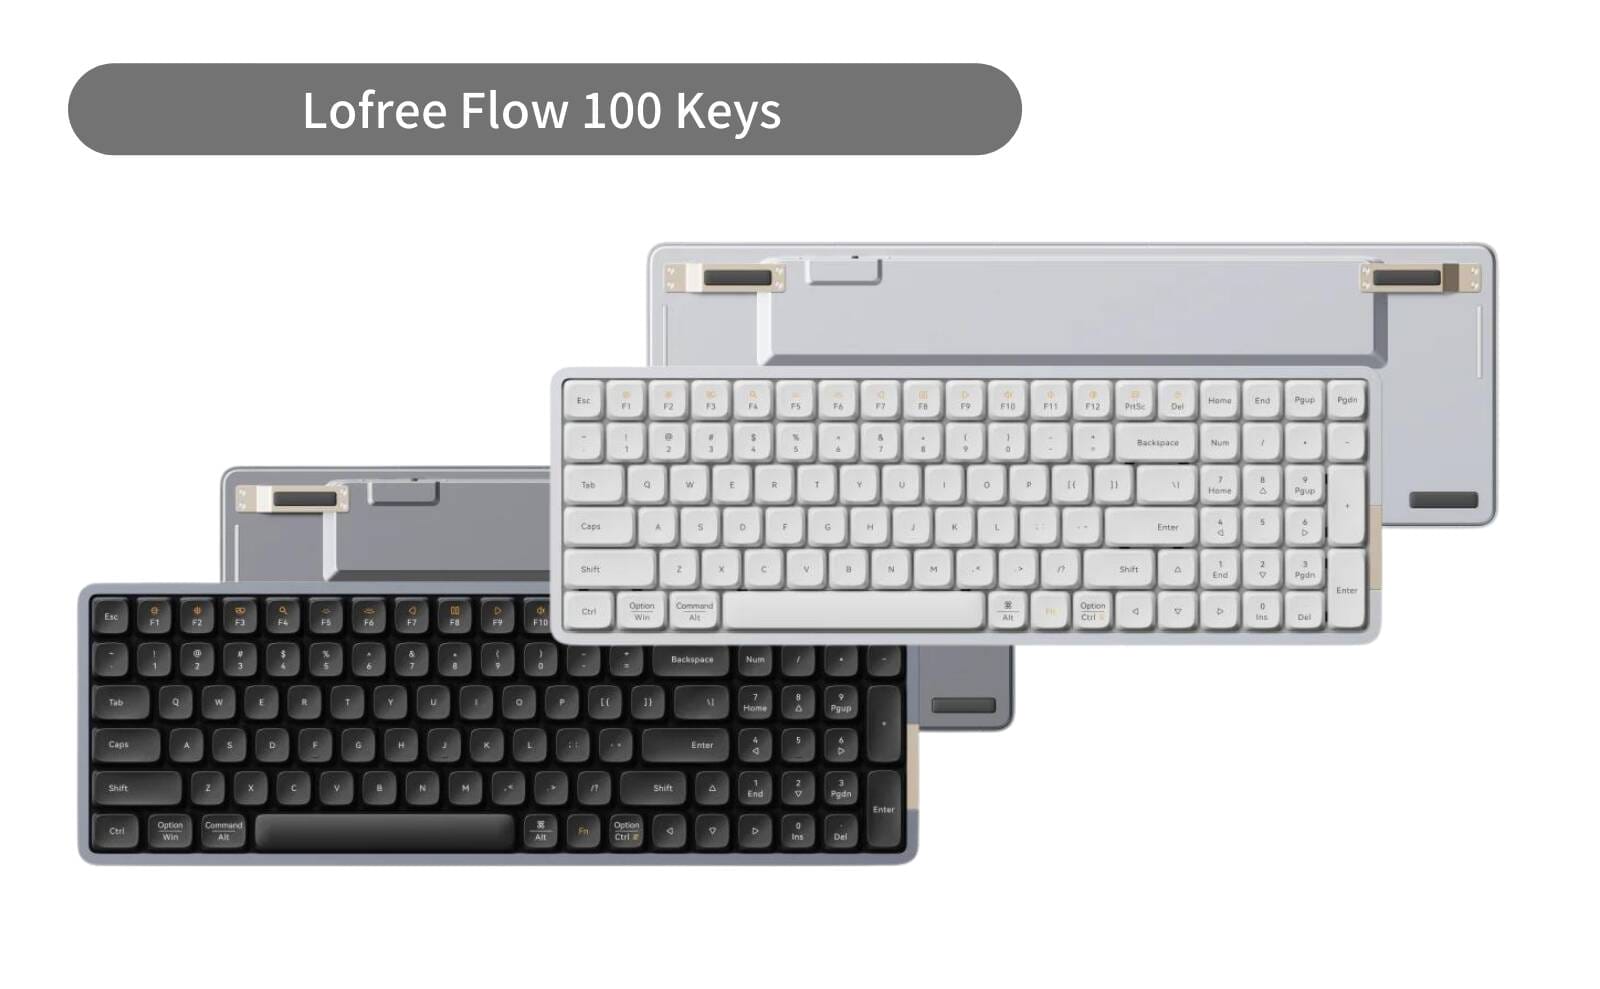 lofree flow 100 keysモデルワイヤレスキーボード